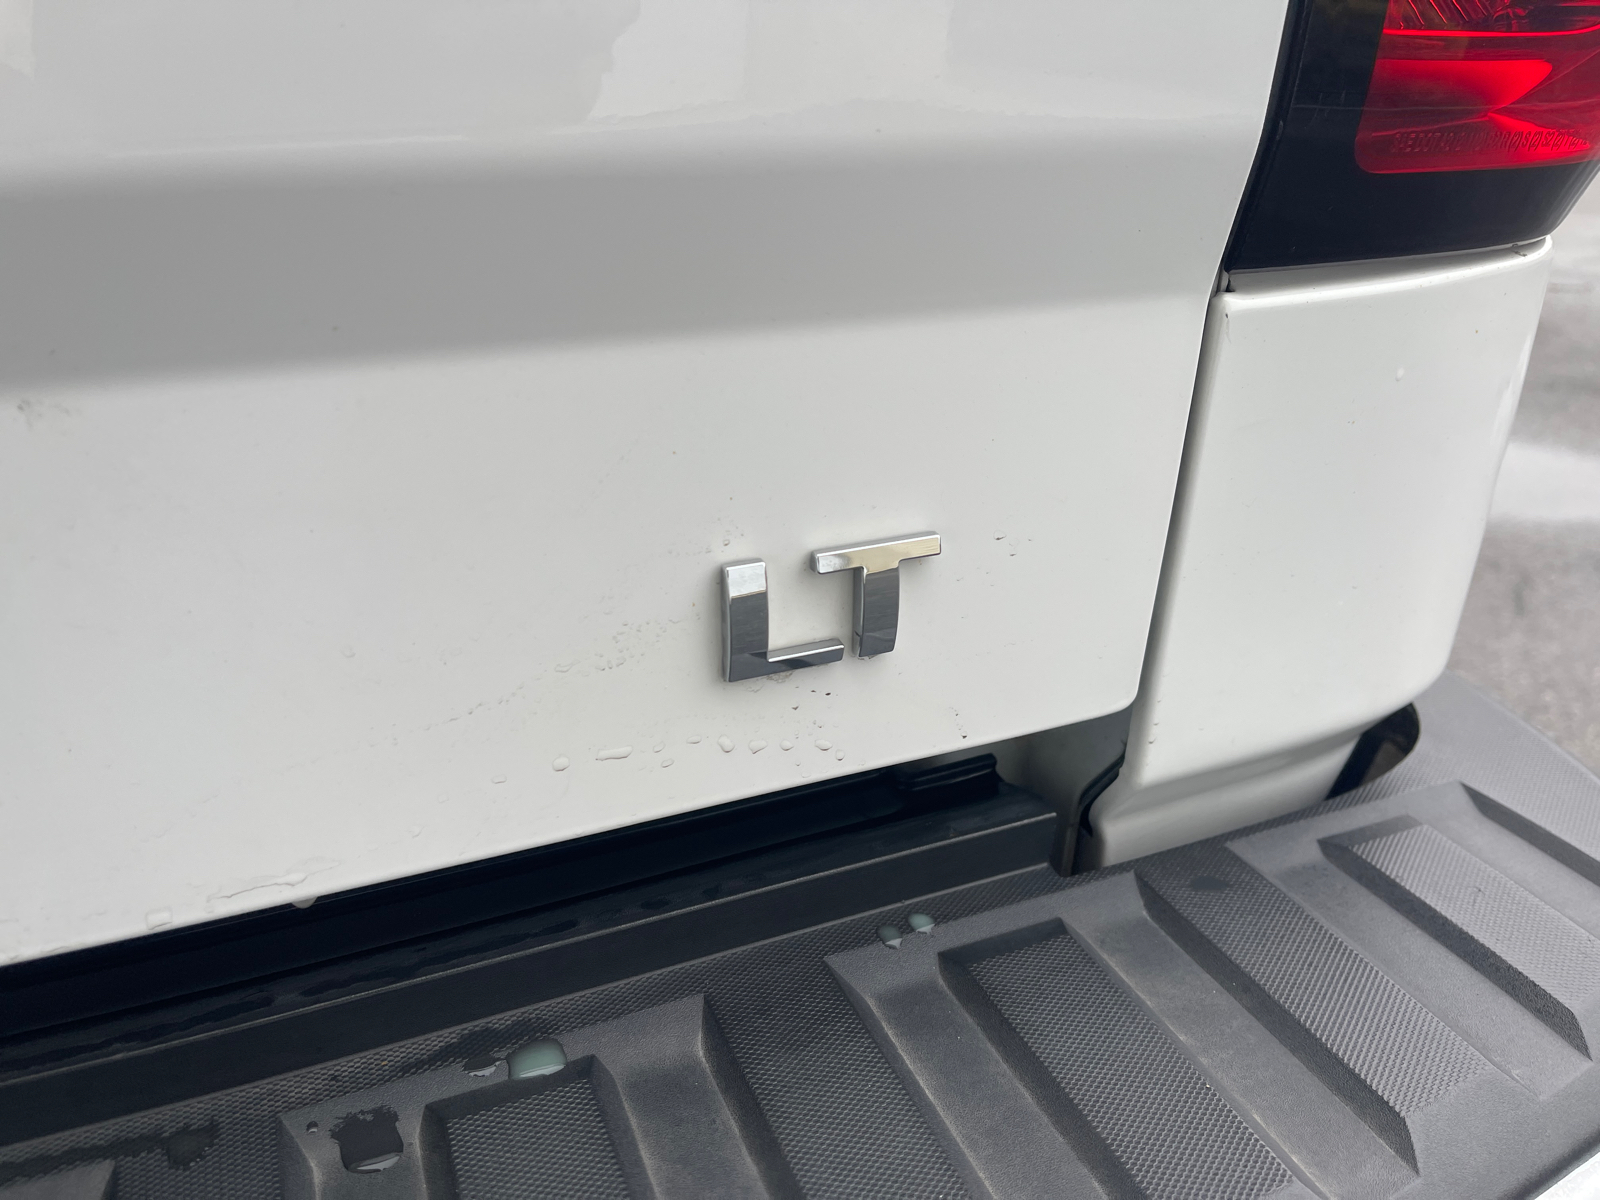 2016 Chevrolet Silverado 1500 LT 10